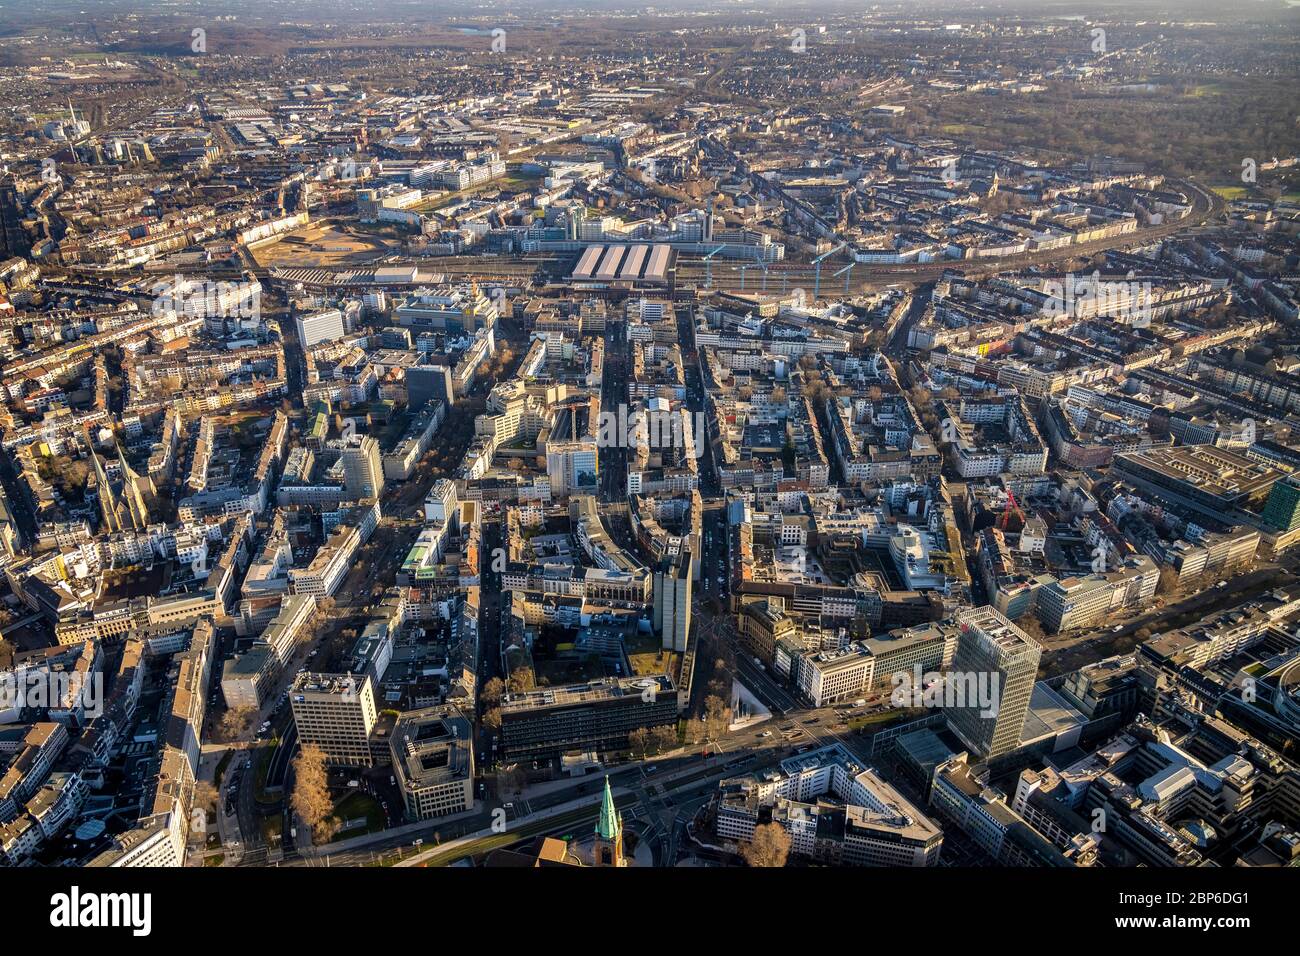 Vue aérienne, vue d'ensemble du centre-ville avec la gare principale, refonte et revitalisation de la gare, Düsseldorf, Rhénanie-du-Nord-Westphalie, Allemagne Banque D'Images